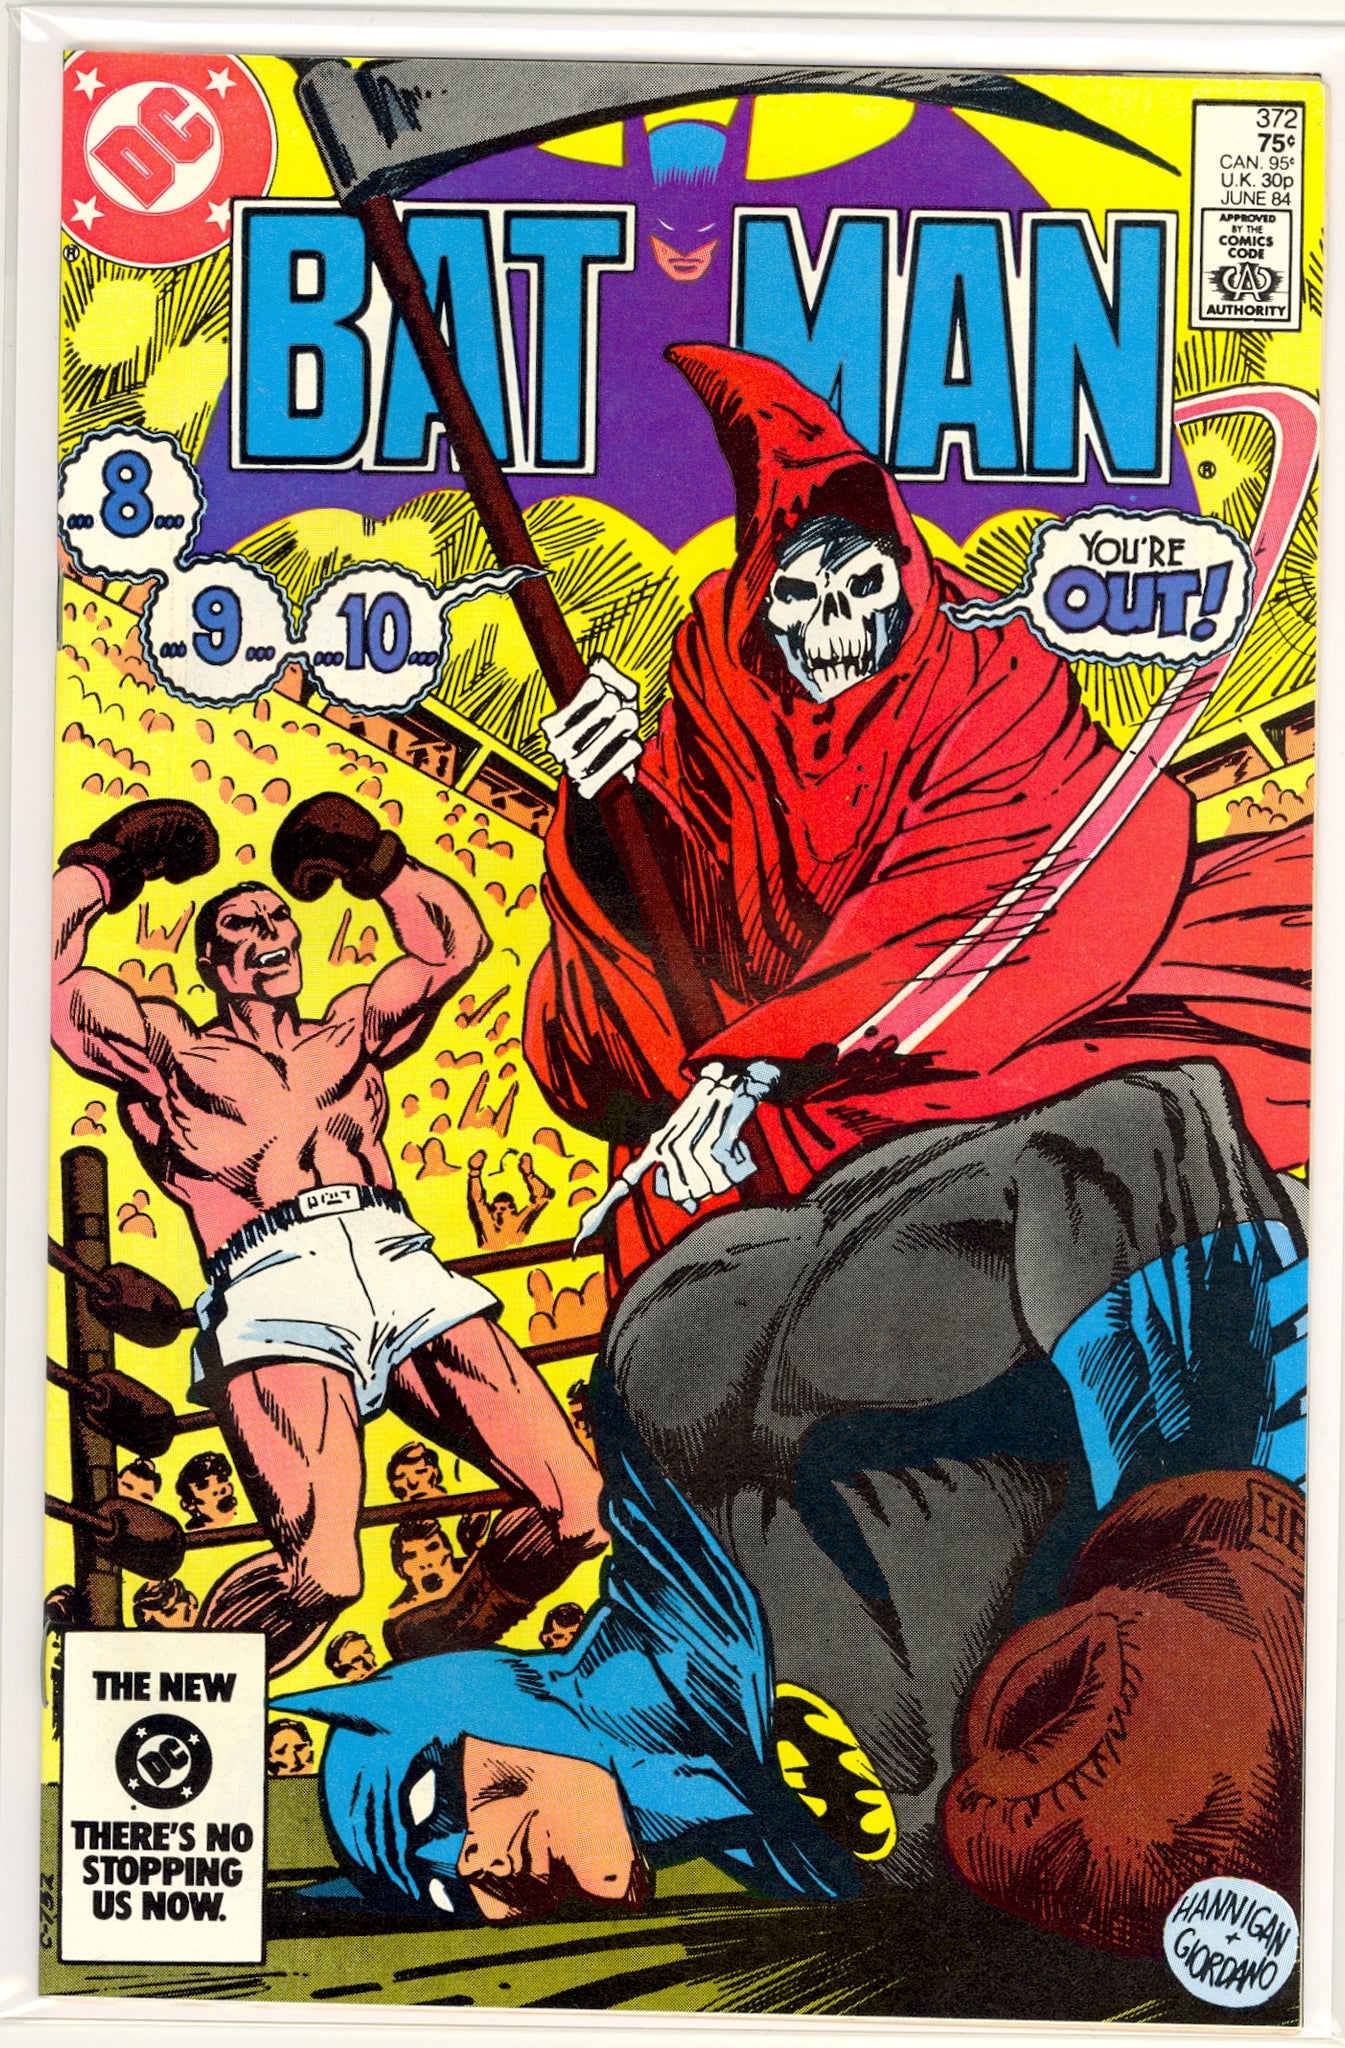 Batman #372 (1984) Dr. Fang